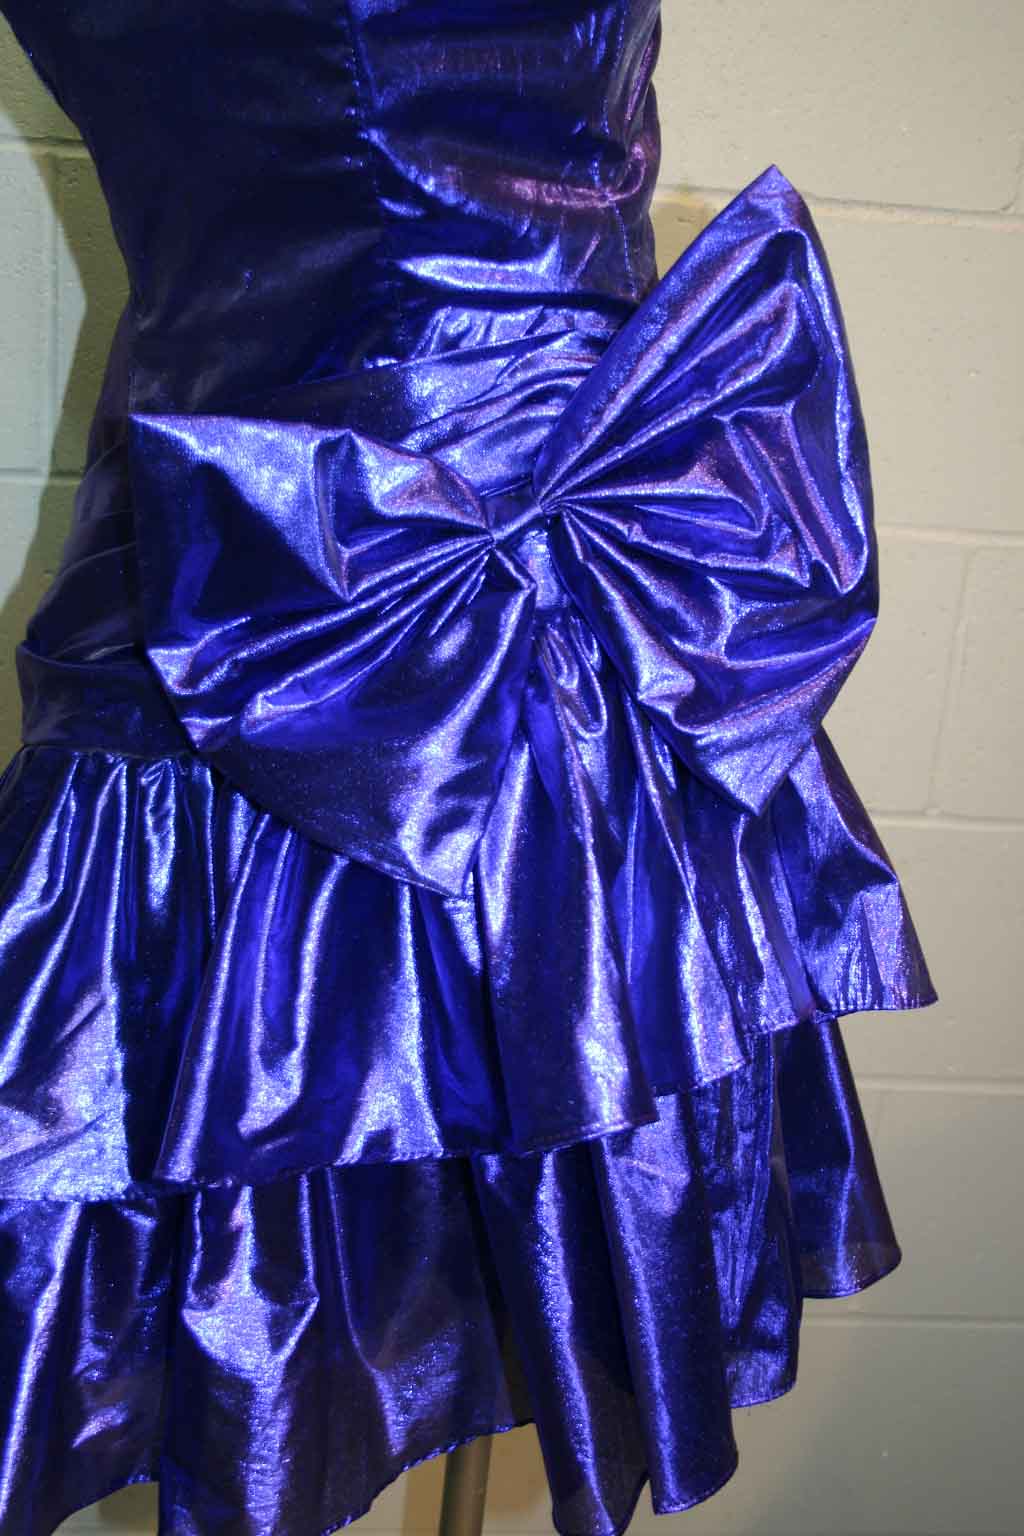   Blue Jean Denim USA Gunne Sax Prairie Calico Lace Ruffle Dress